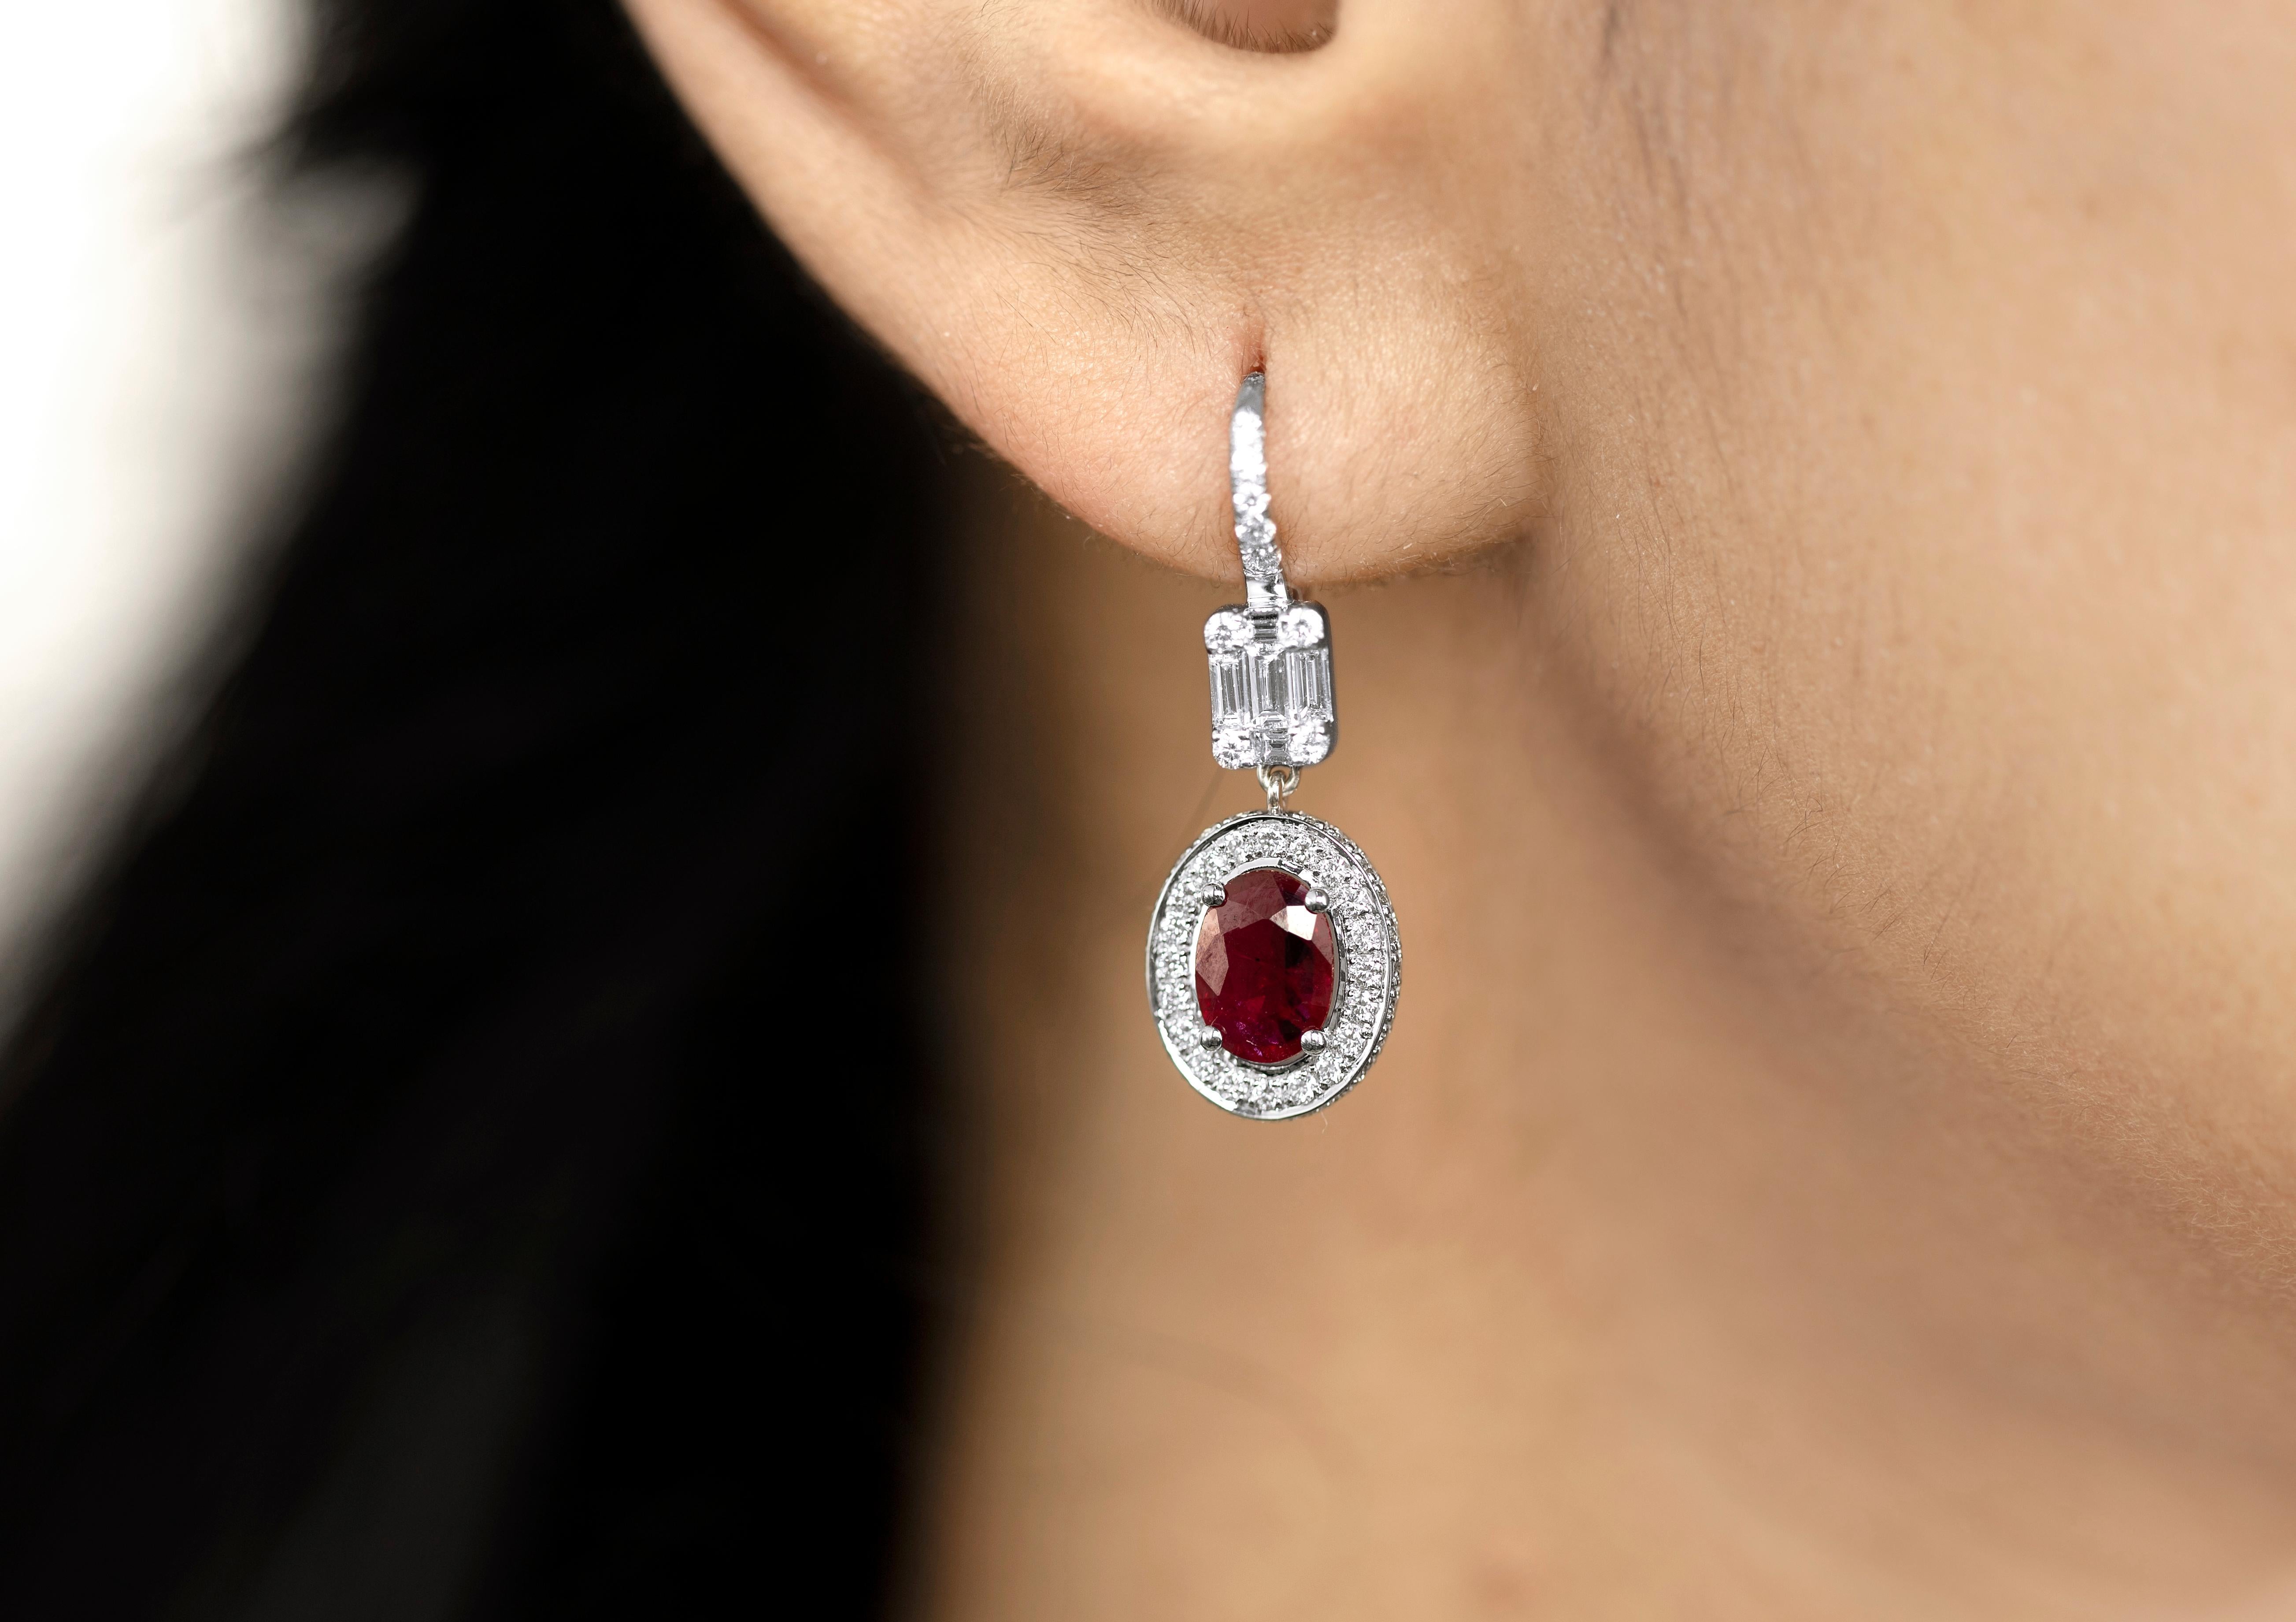 Außergewöhnlicher ovaler natürlicher Rubin-Diamant-Ohrringe, Halo-Diamant in 18 Karat Gold


Erhältlich in 18 Karat Weißgold.

Das gleiche Design kann auch mit anderen Edelsteinen auf Anfrage hergestellt werden.

Einzelheiten zum Produkt:

-